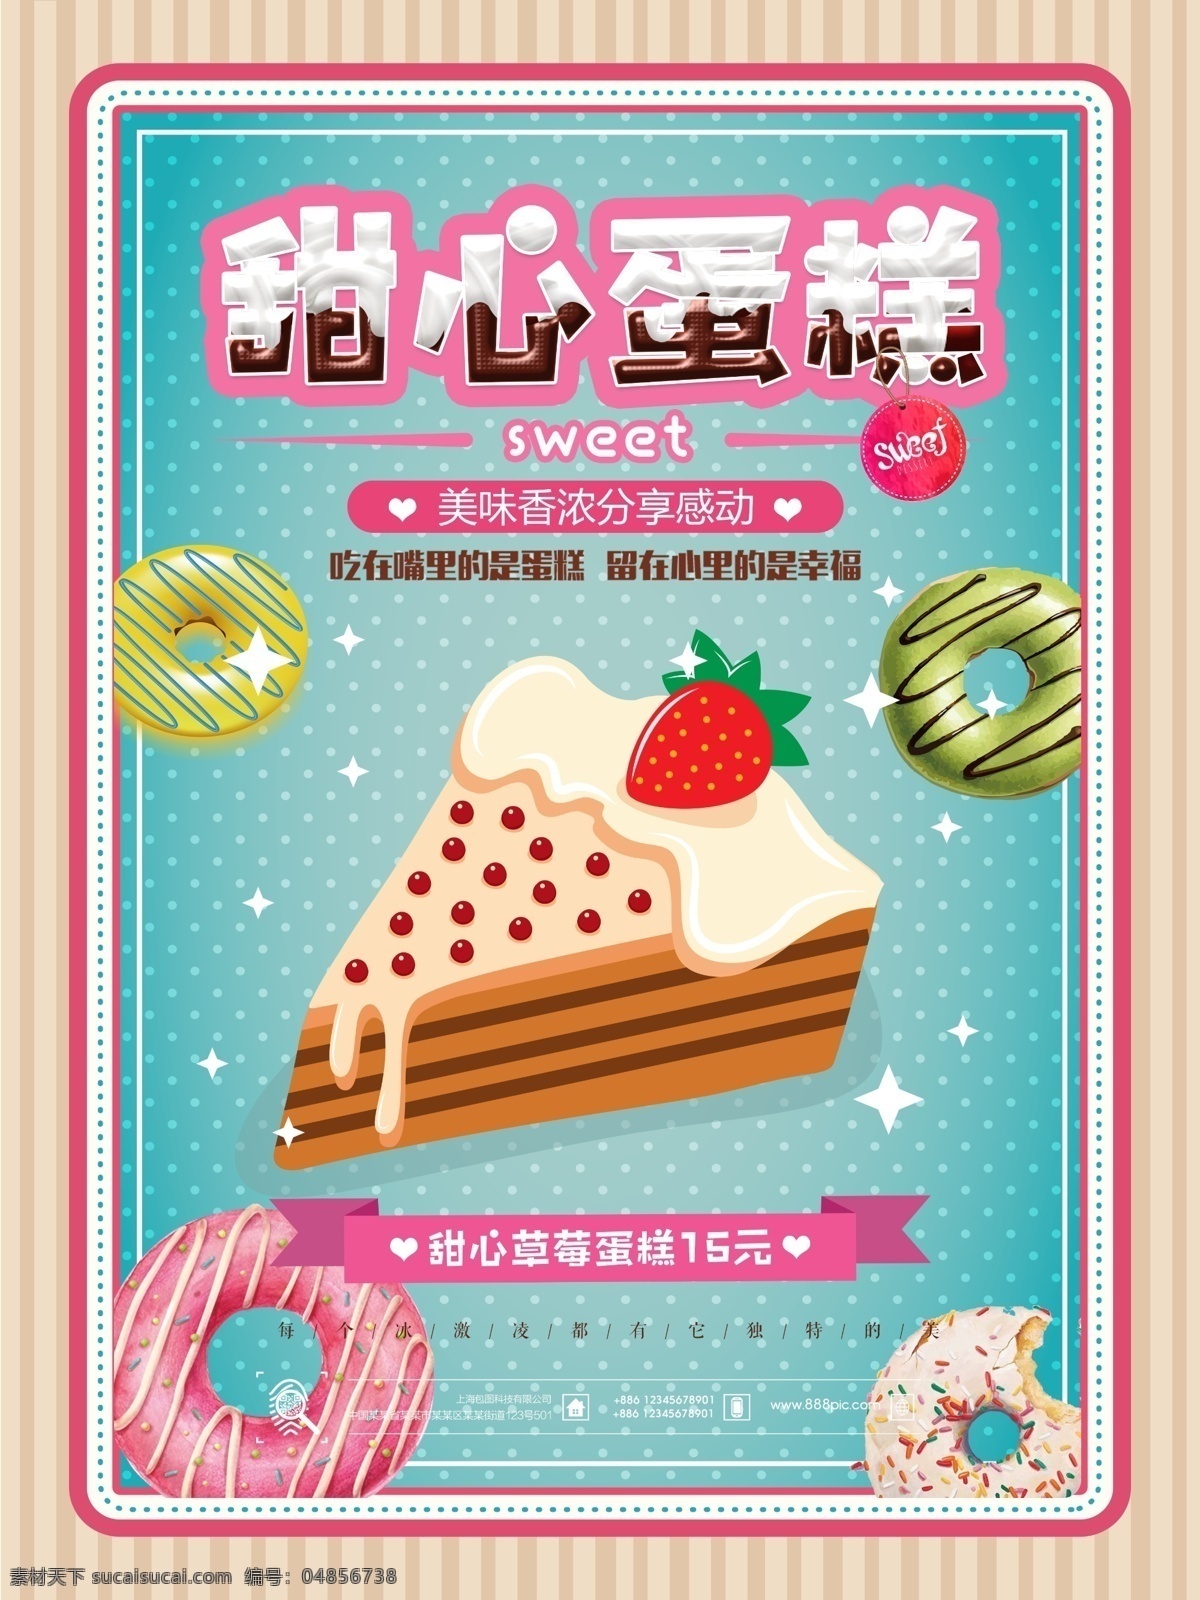 甜心 草莓 蛋糕 甜品 点心 海报 美食 小吃 甜点 新品上市 蛋糕店 面包房 餐饮海报 面包 零食 美味